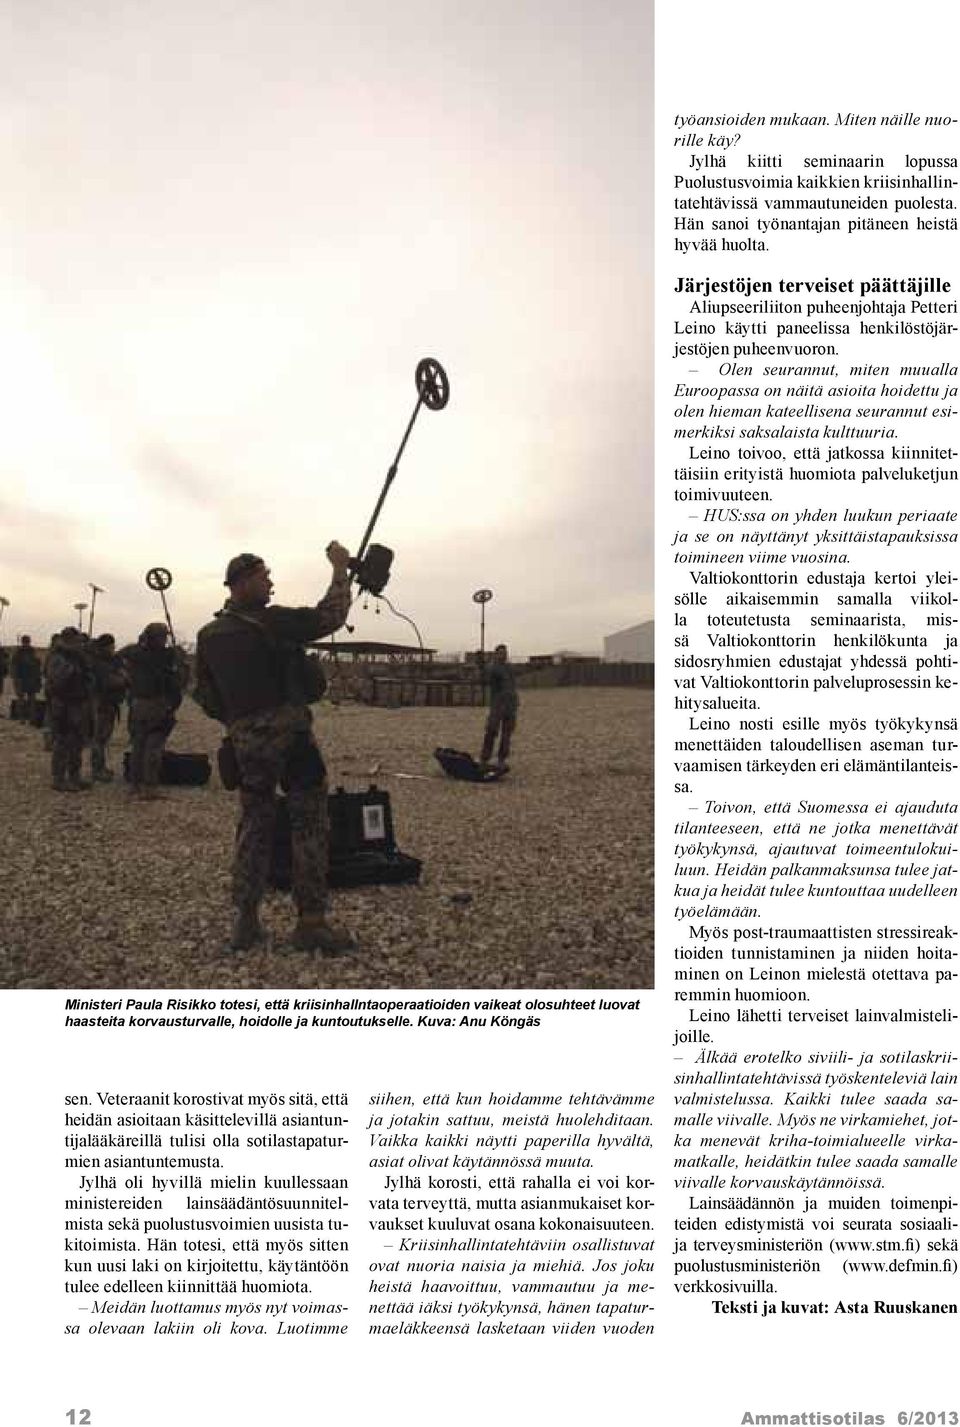 Kuva: Anu Köngäs sen. Veteraanit korostivat myös sitä, että heidän asioitaan käsittelevillä asiantuntijalääkäreillä tulisi olla sotilastapaturmien asiantuntemusta.